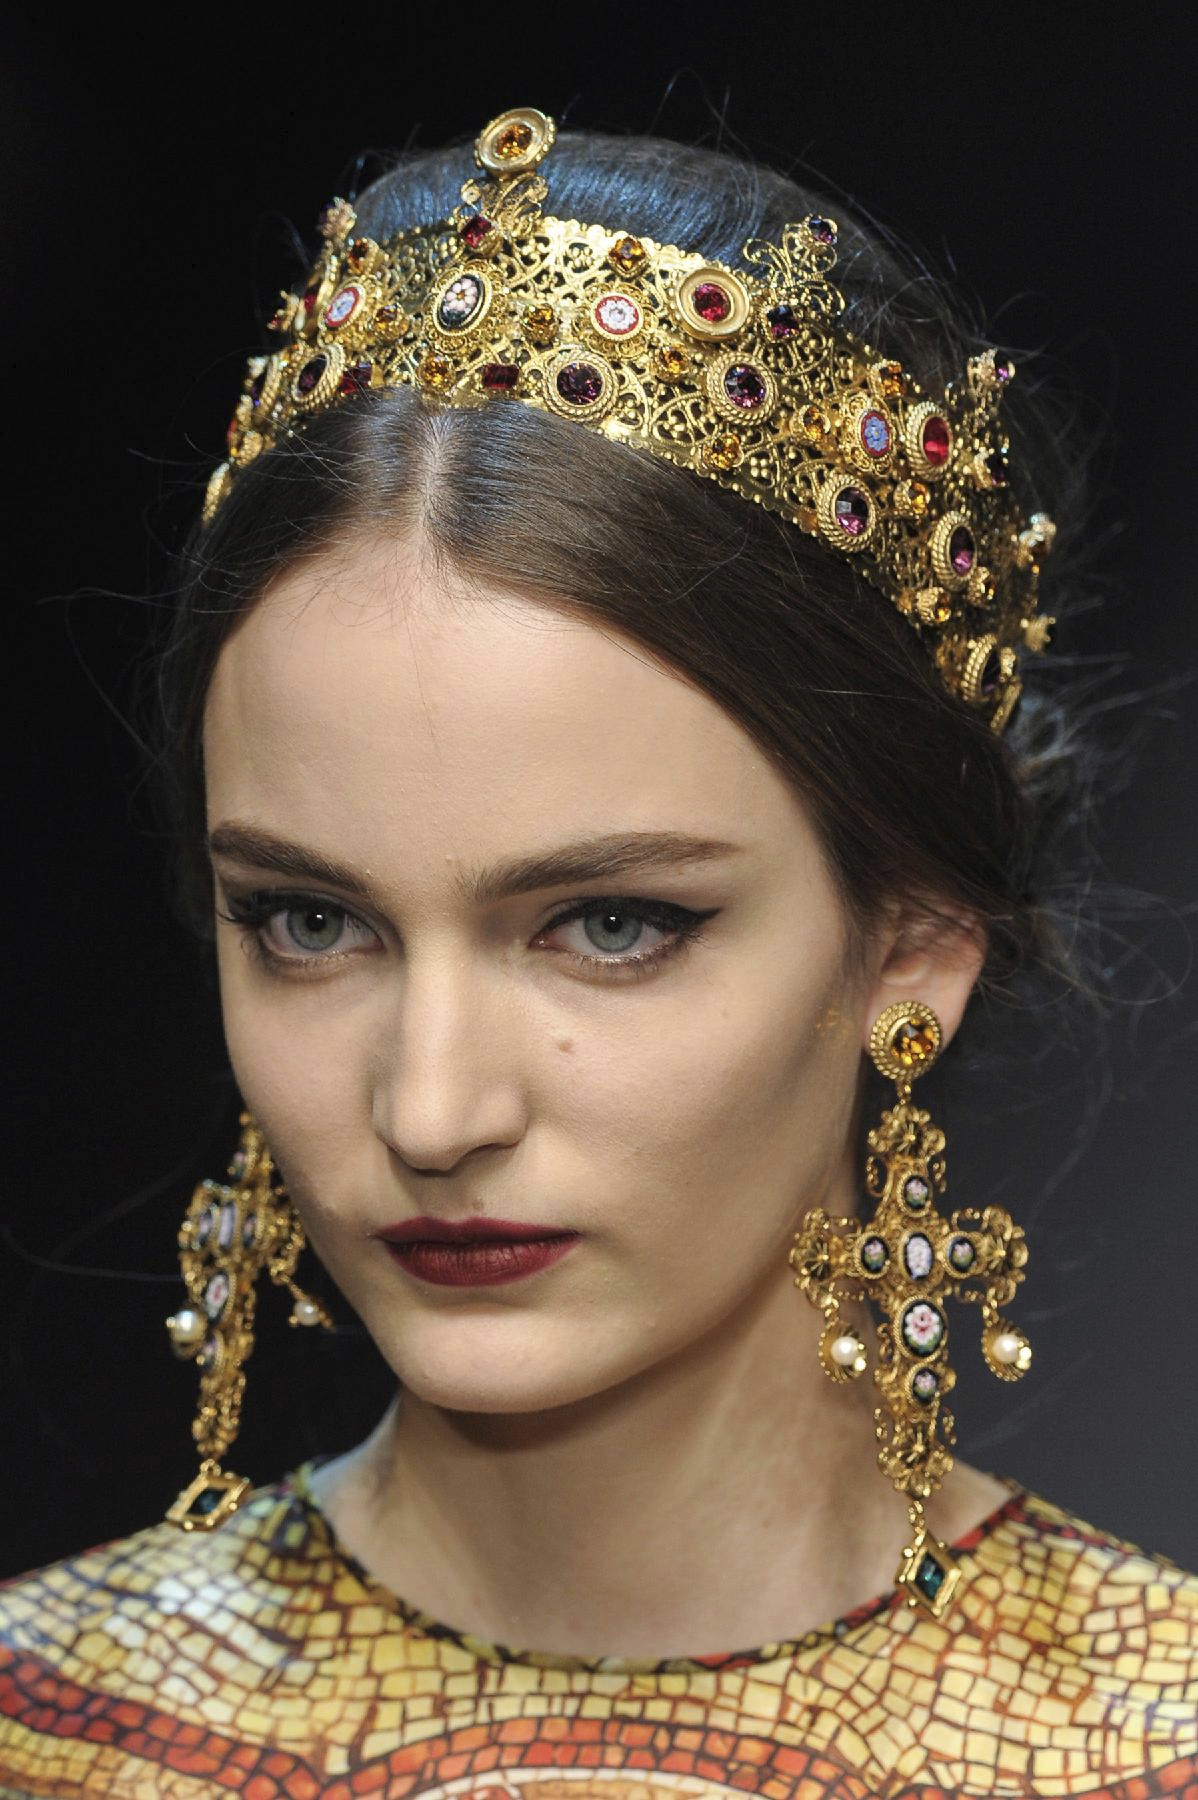 Dolce & Gabbana at Milan Fashion Week Fall 2013 | Byzantine fashion ...